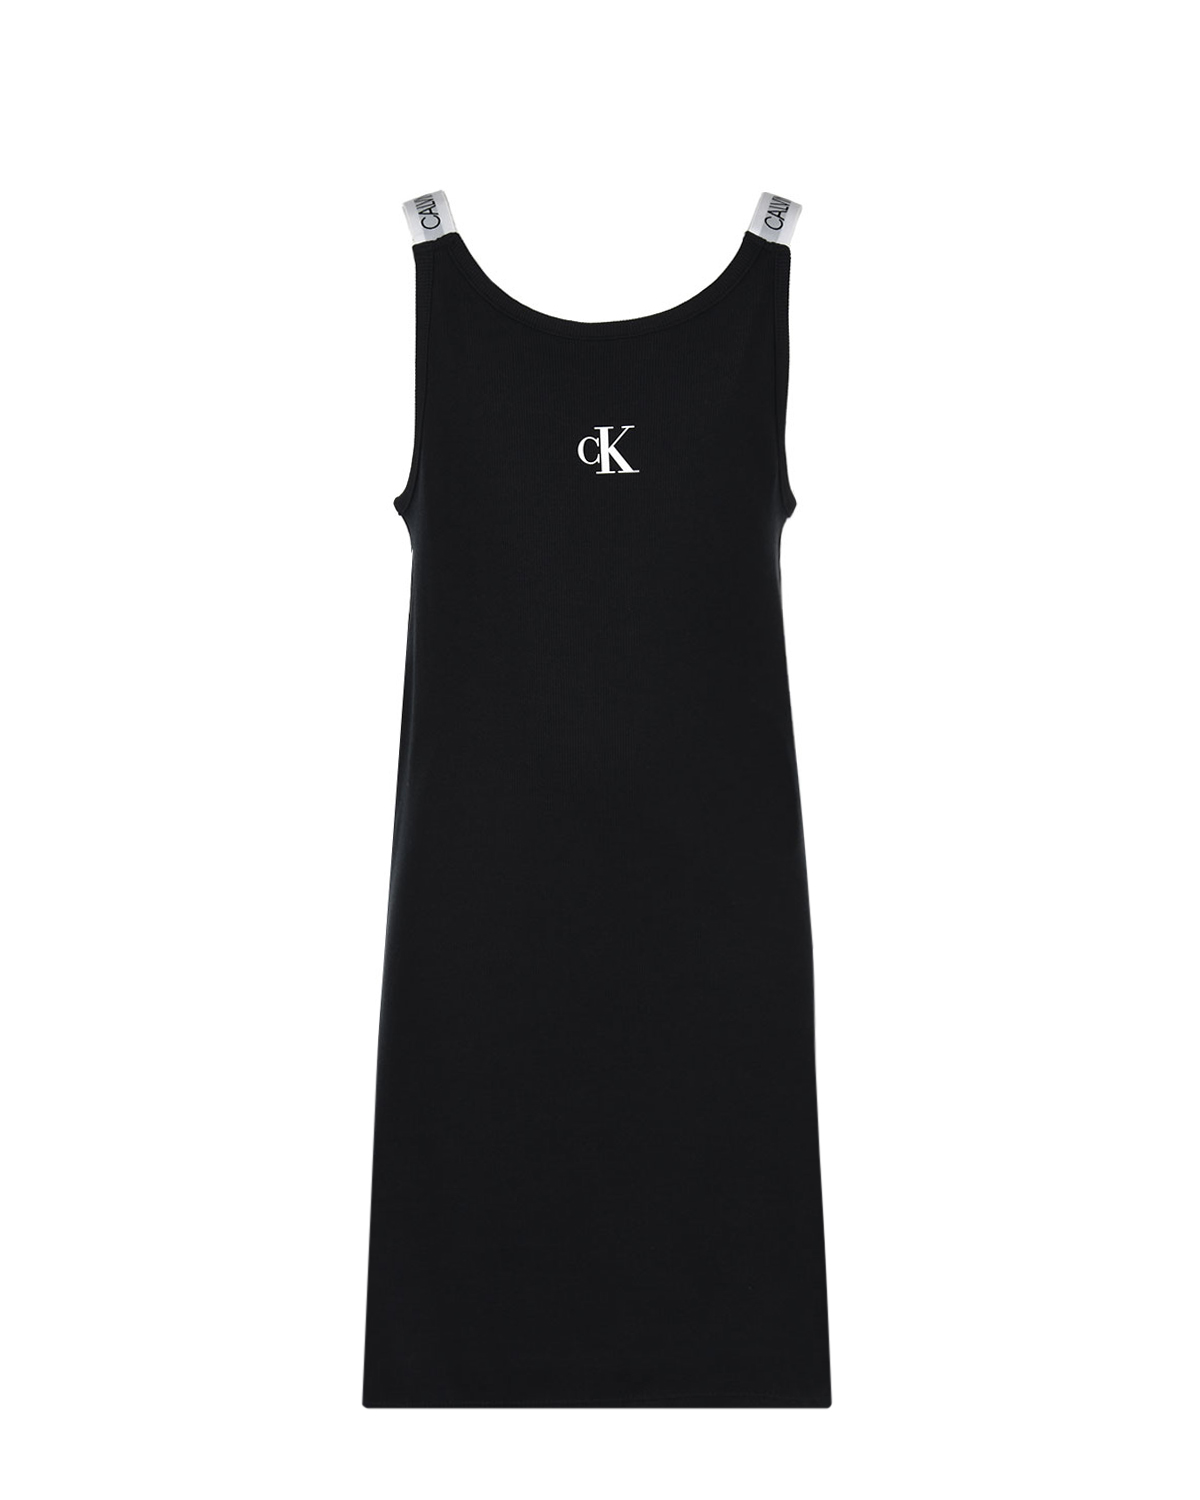 Трикотажное платье с брендированными лямками Calvin Klein